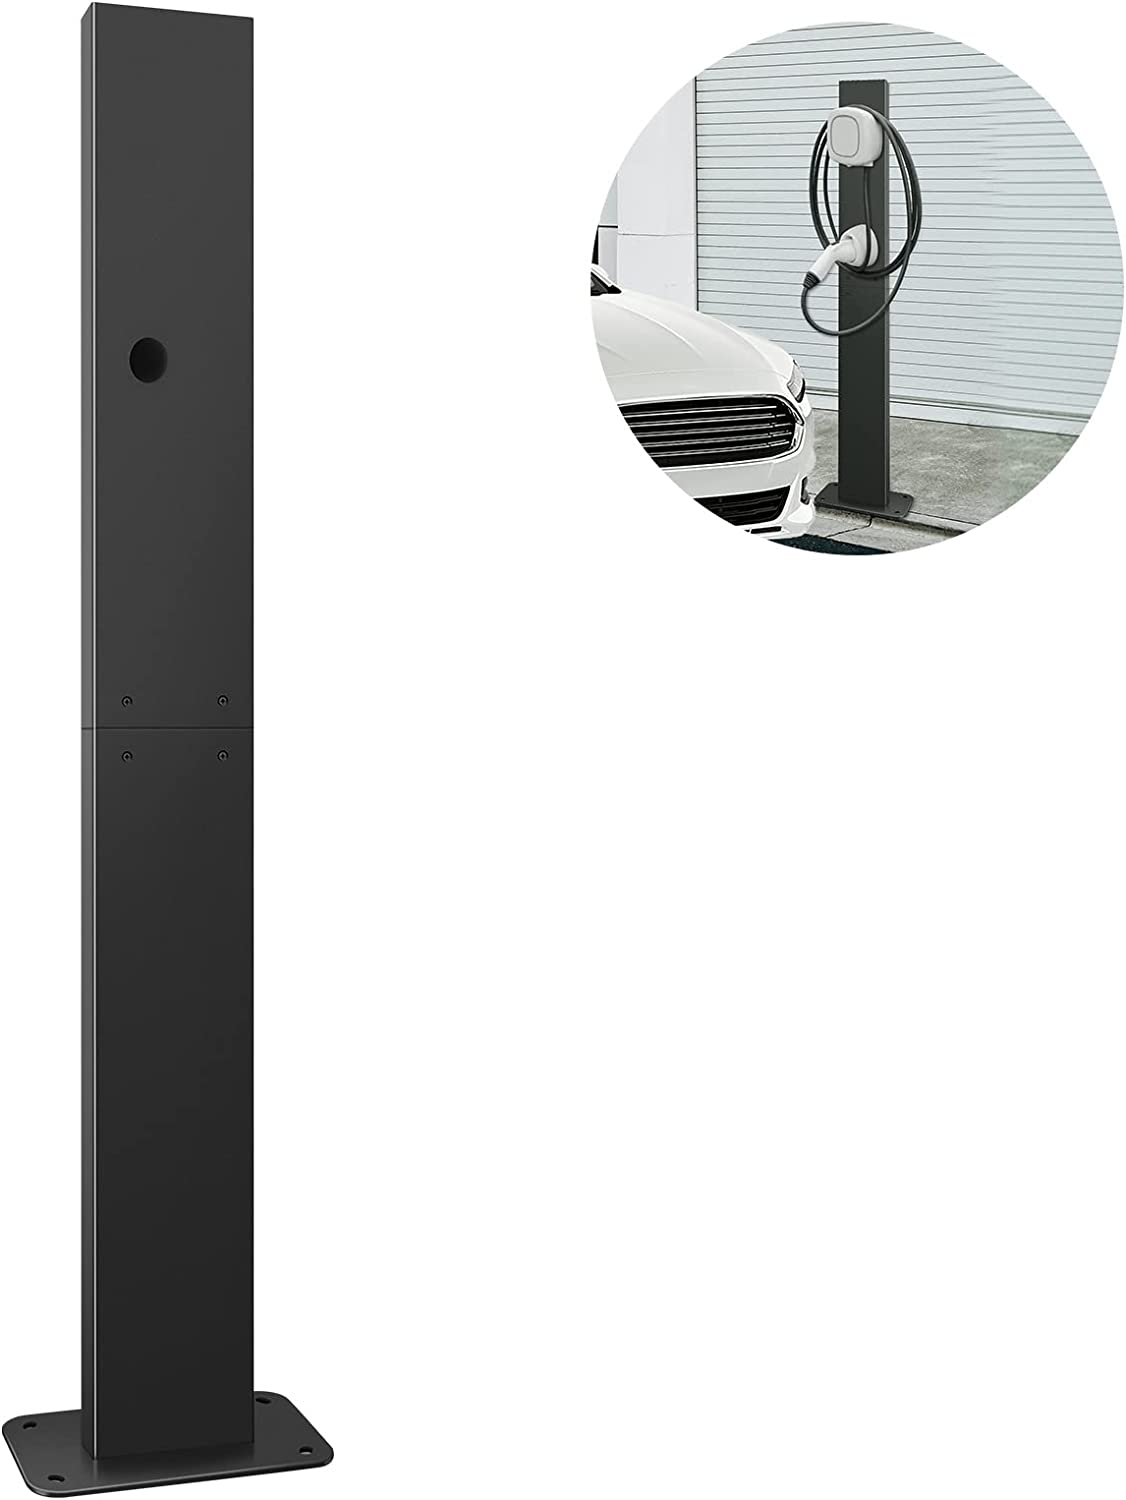 eMACROS Pedestal de conector de pared EVSE - Pedestal para estación de carga general de vehículos eléctricos montada